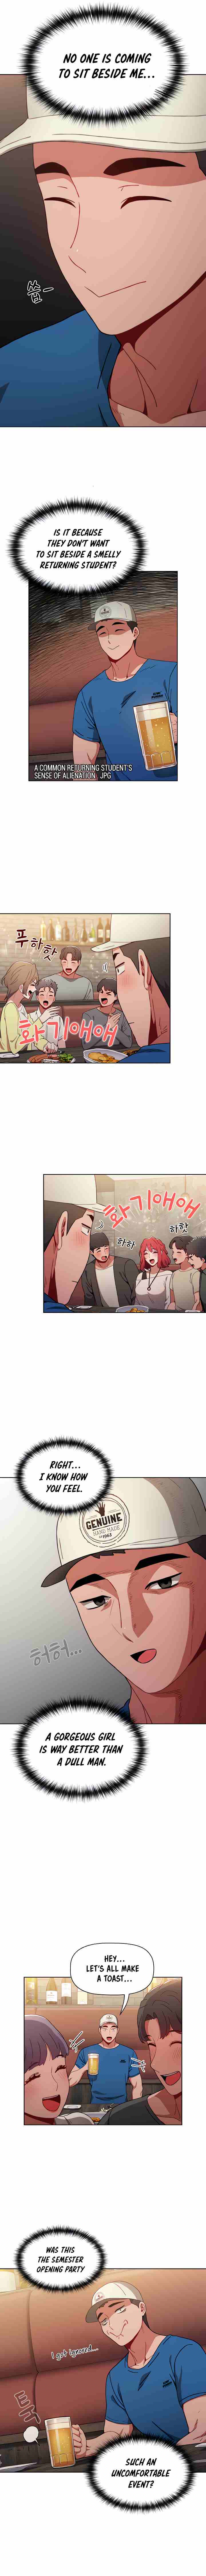 [Team Biyang, Whistle] Dorm Room Sisters Ch.30/? [English] [Manhwa PDF]